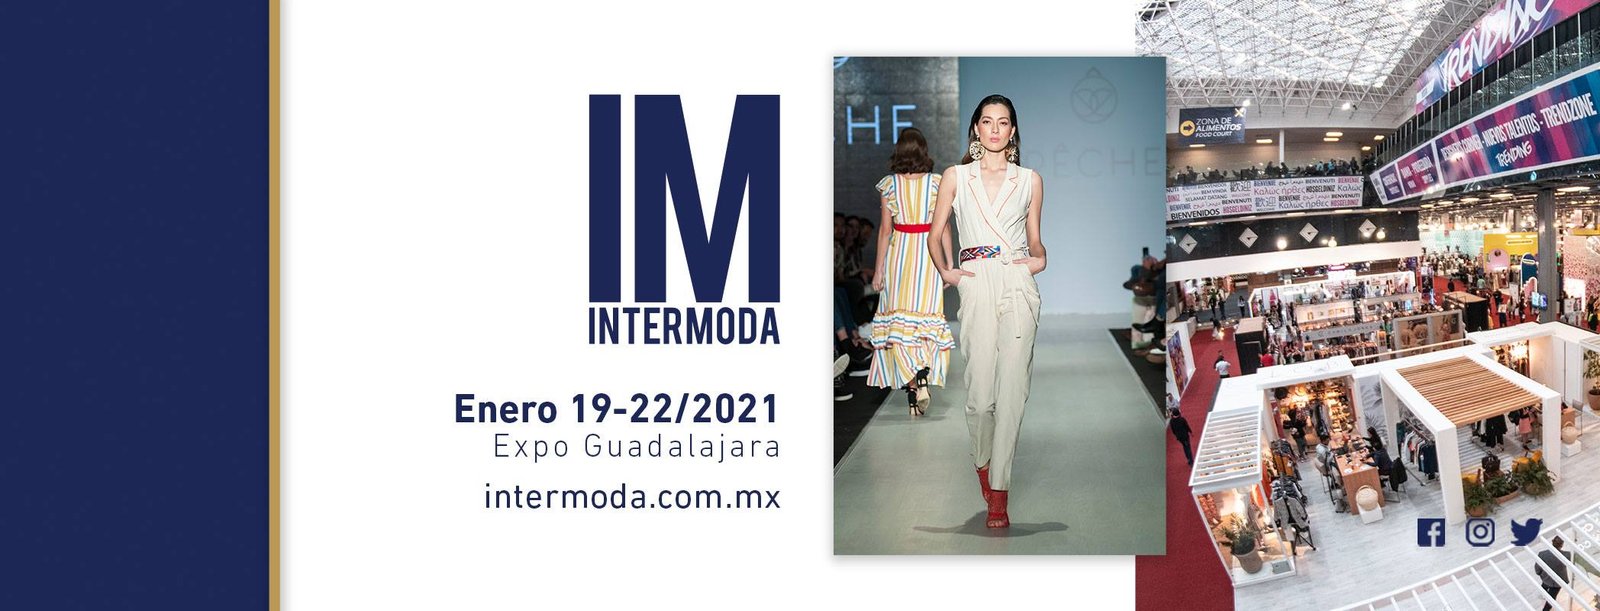 Intermoda Intermoda 74 Guadalajara, El Evento De Moda Por Excelencia - Prensa